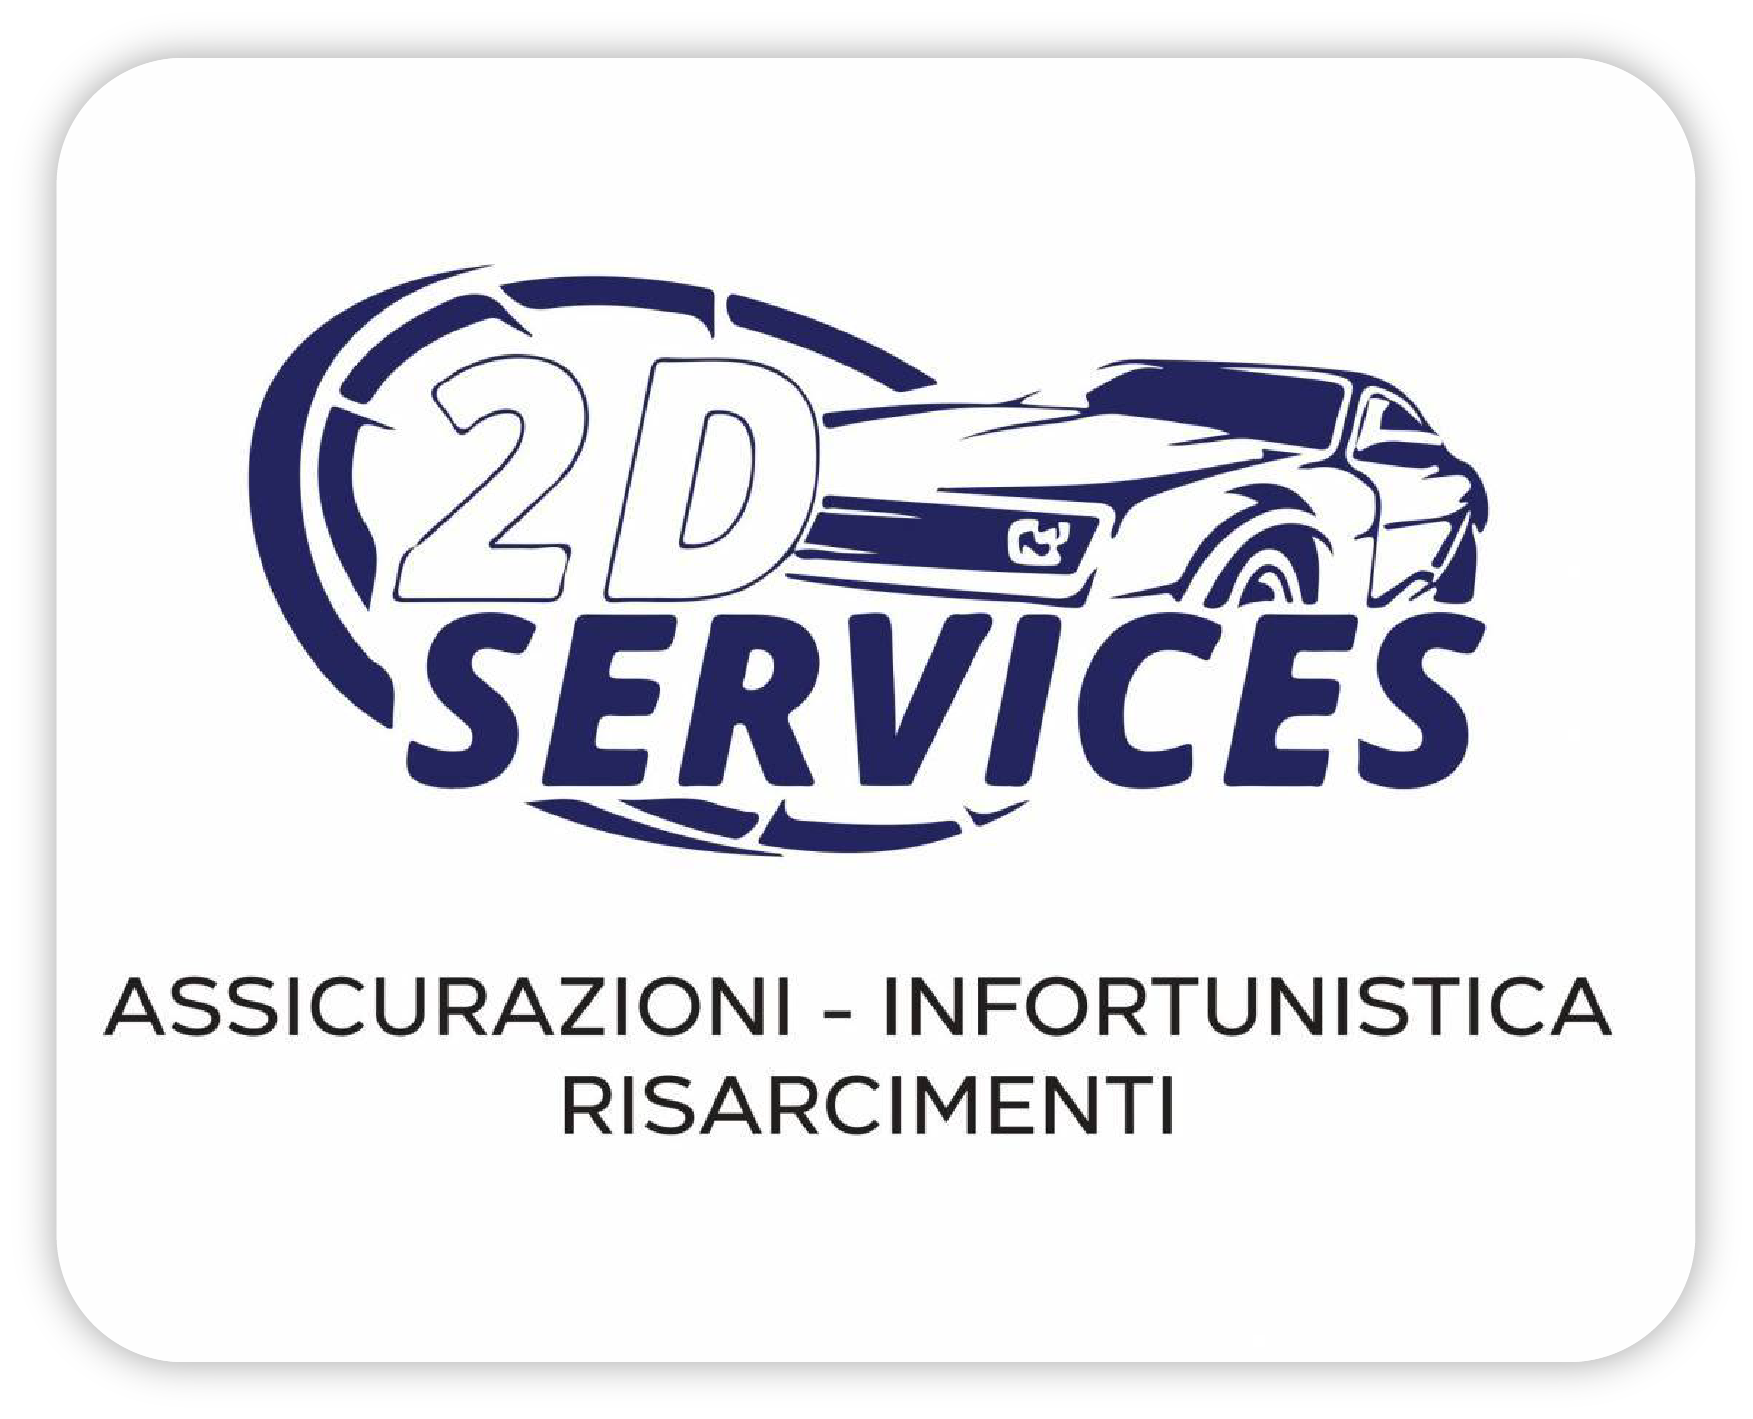 2d Services